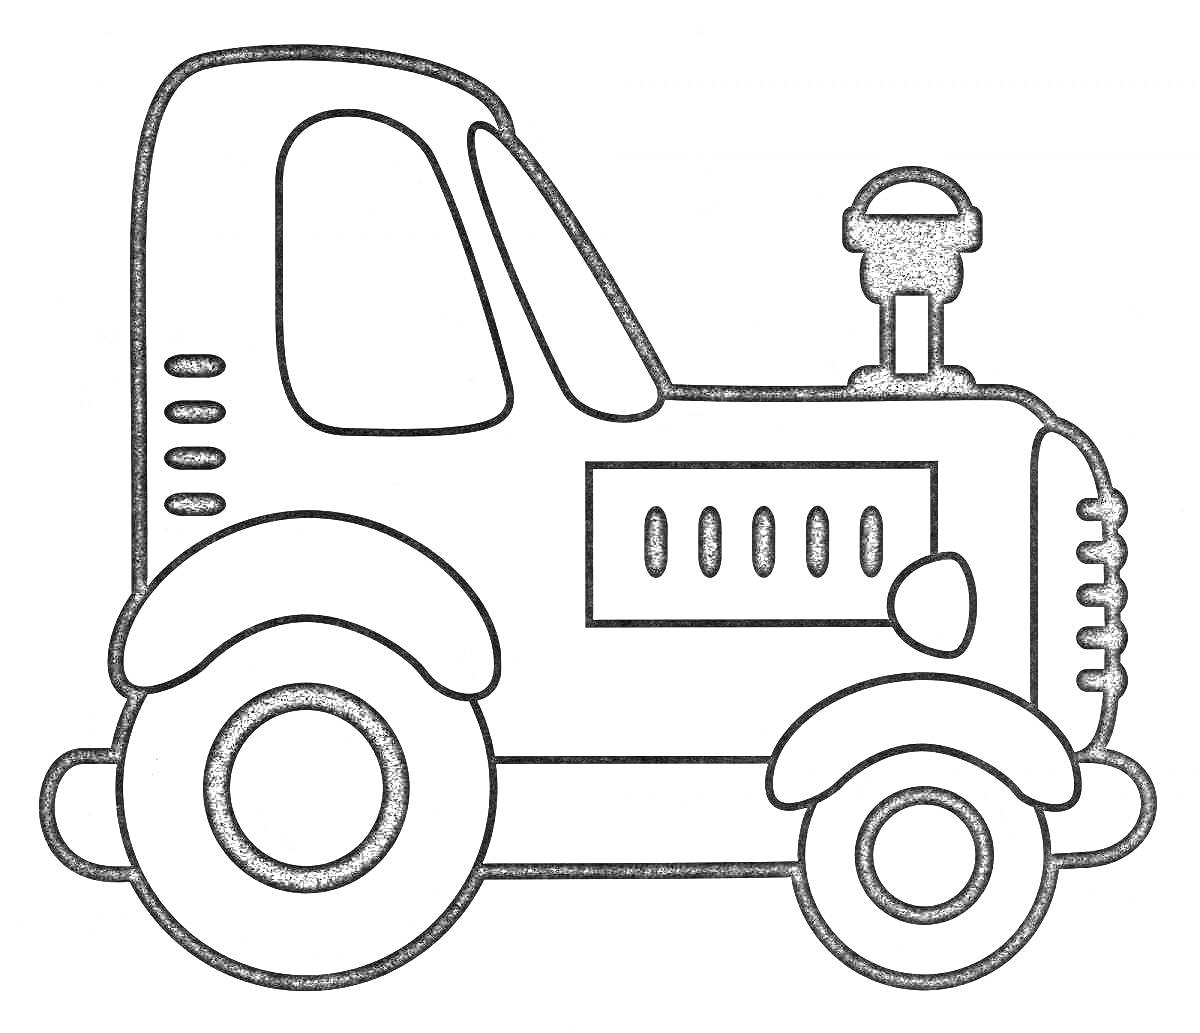 Трактор с большими колесами, кабиной и выхлопной трубой